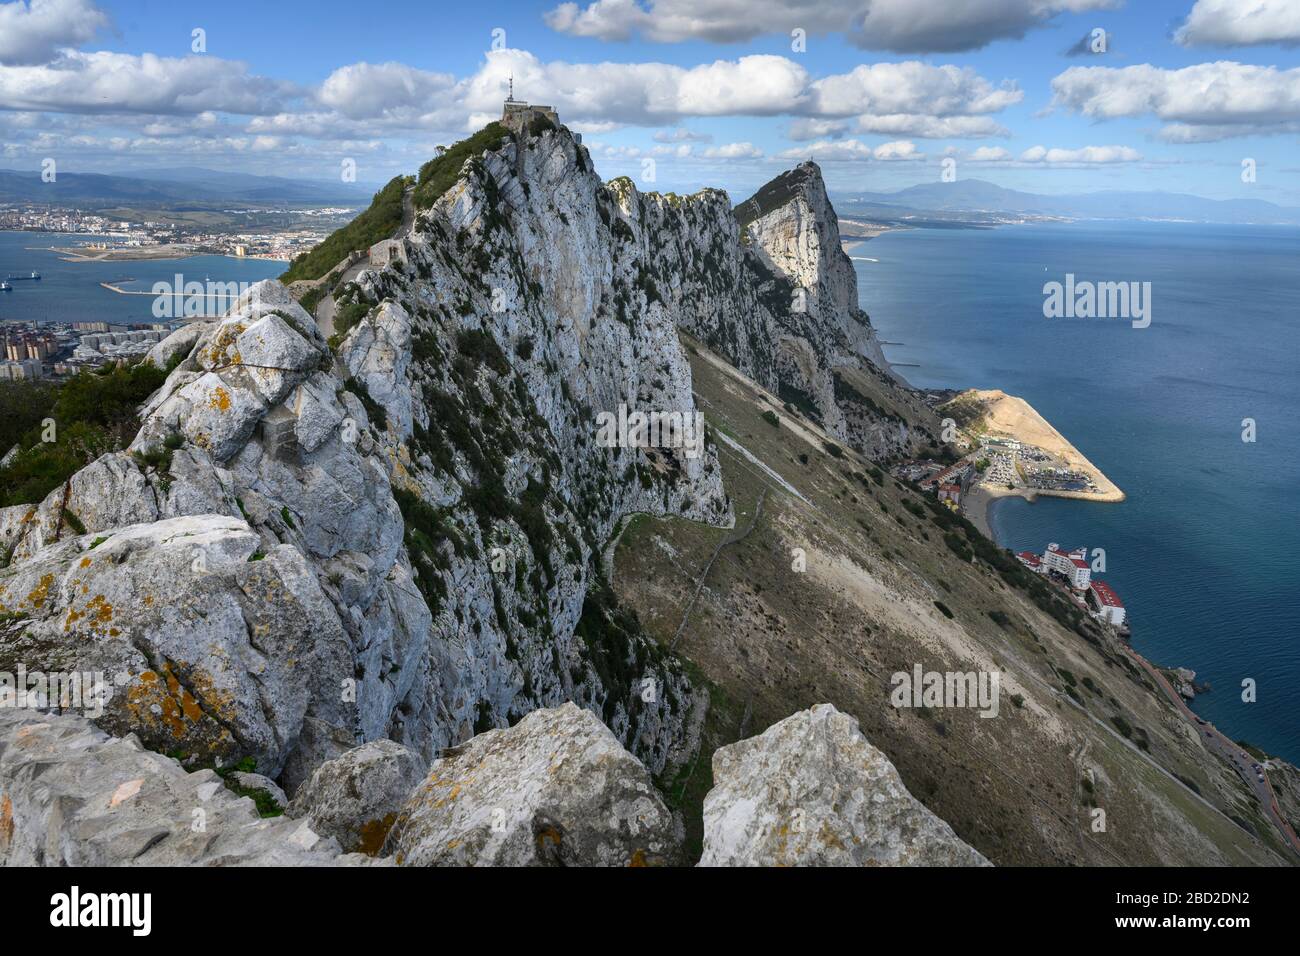 Vista della cima della montagna che si affaccia sulla costa, Gibilterra, territorio britannico d'oltremare, penisola iberica Foto Stock